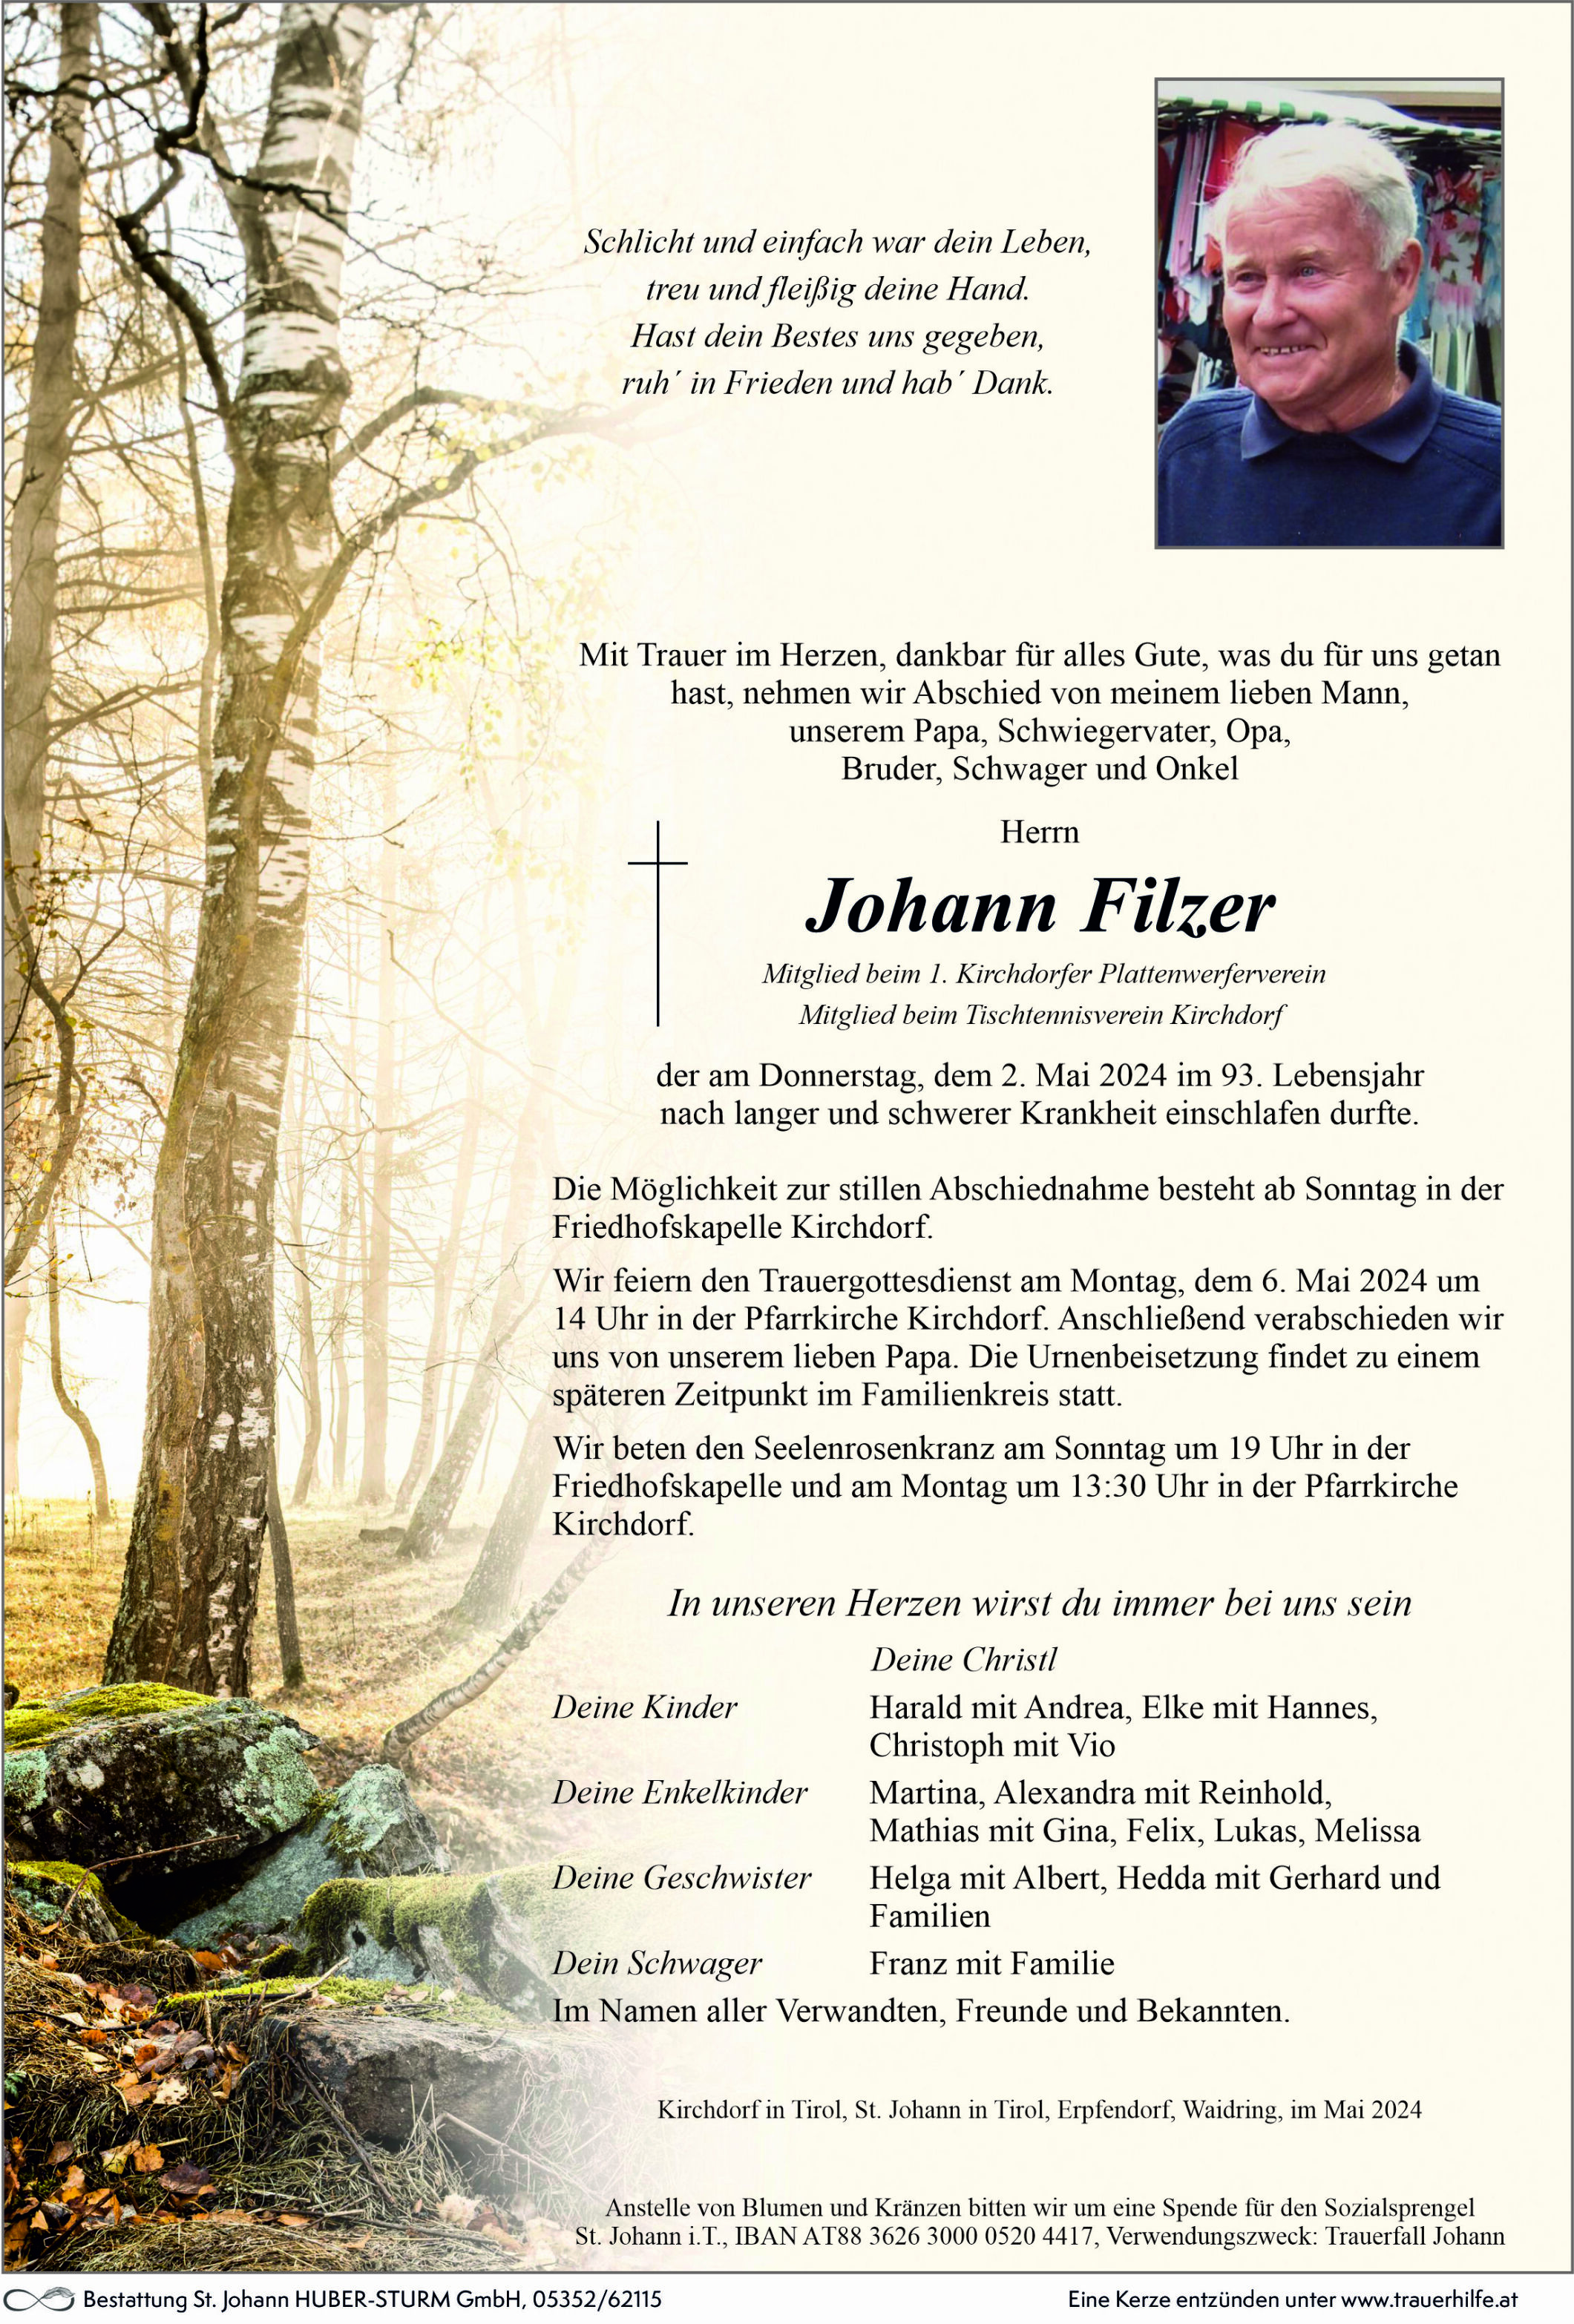 Johann Filzer